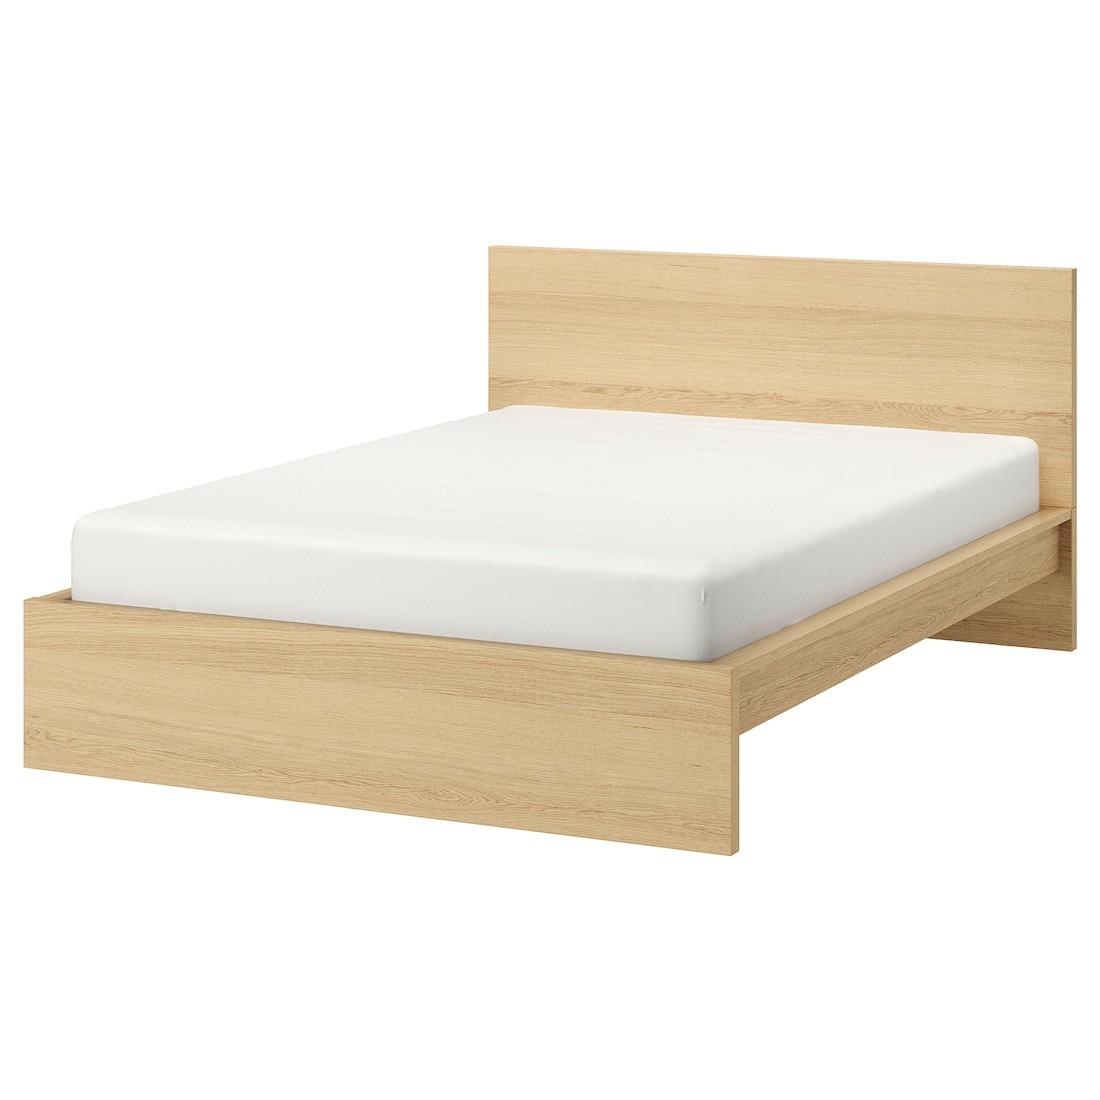 MALM МАЛЬМ Кровать двуспальная, высокий, дубовый шпон беленый / Lönset, 180x200 см